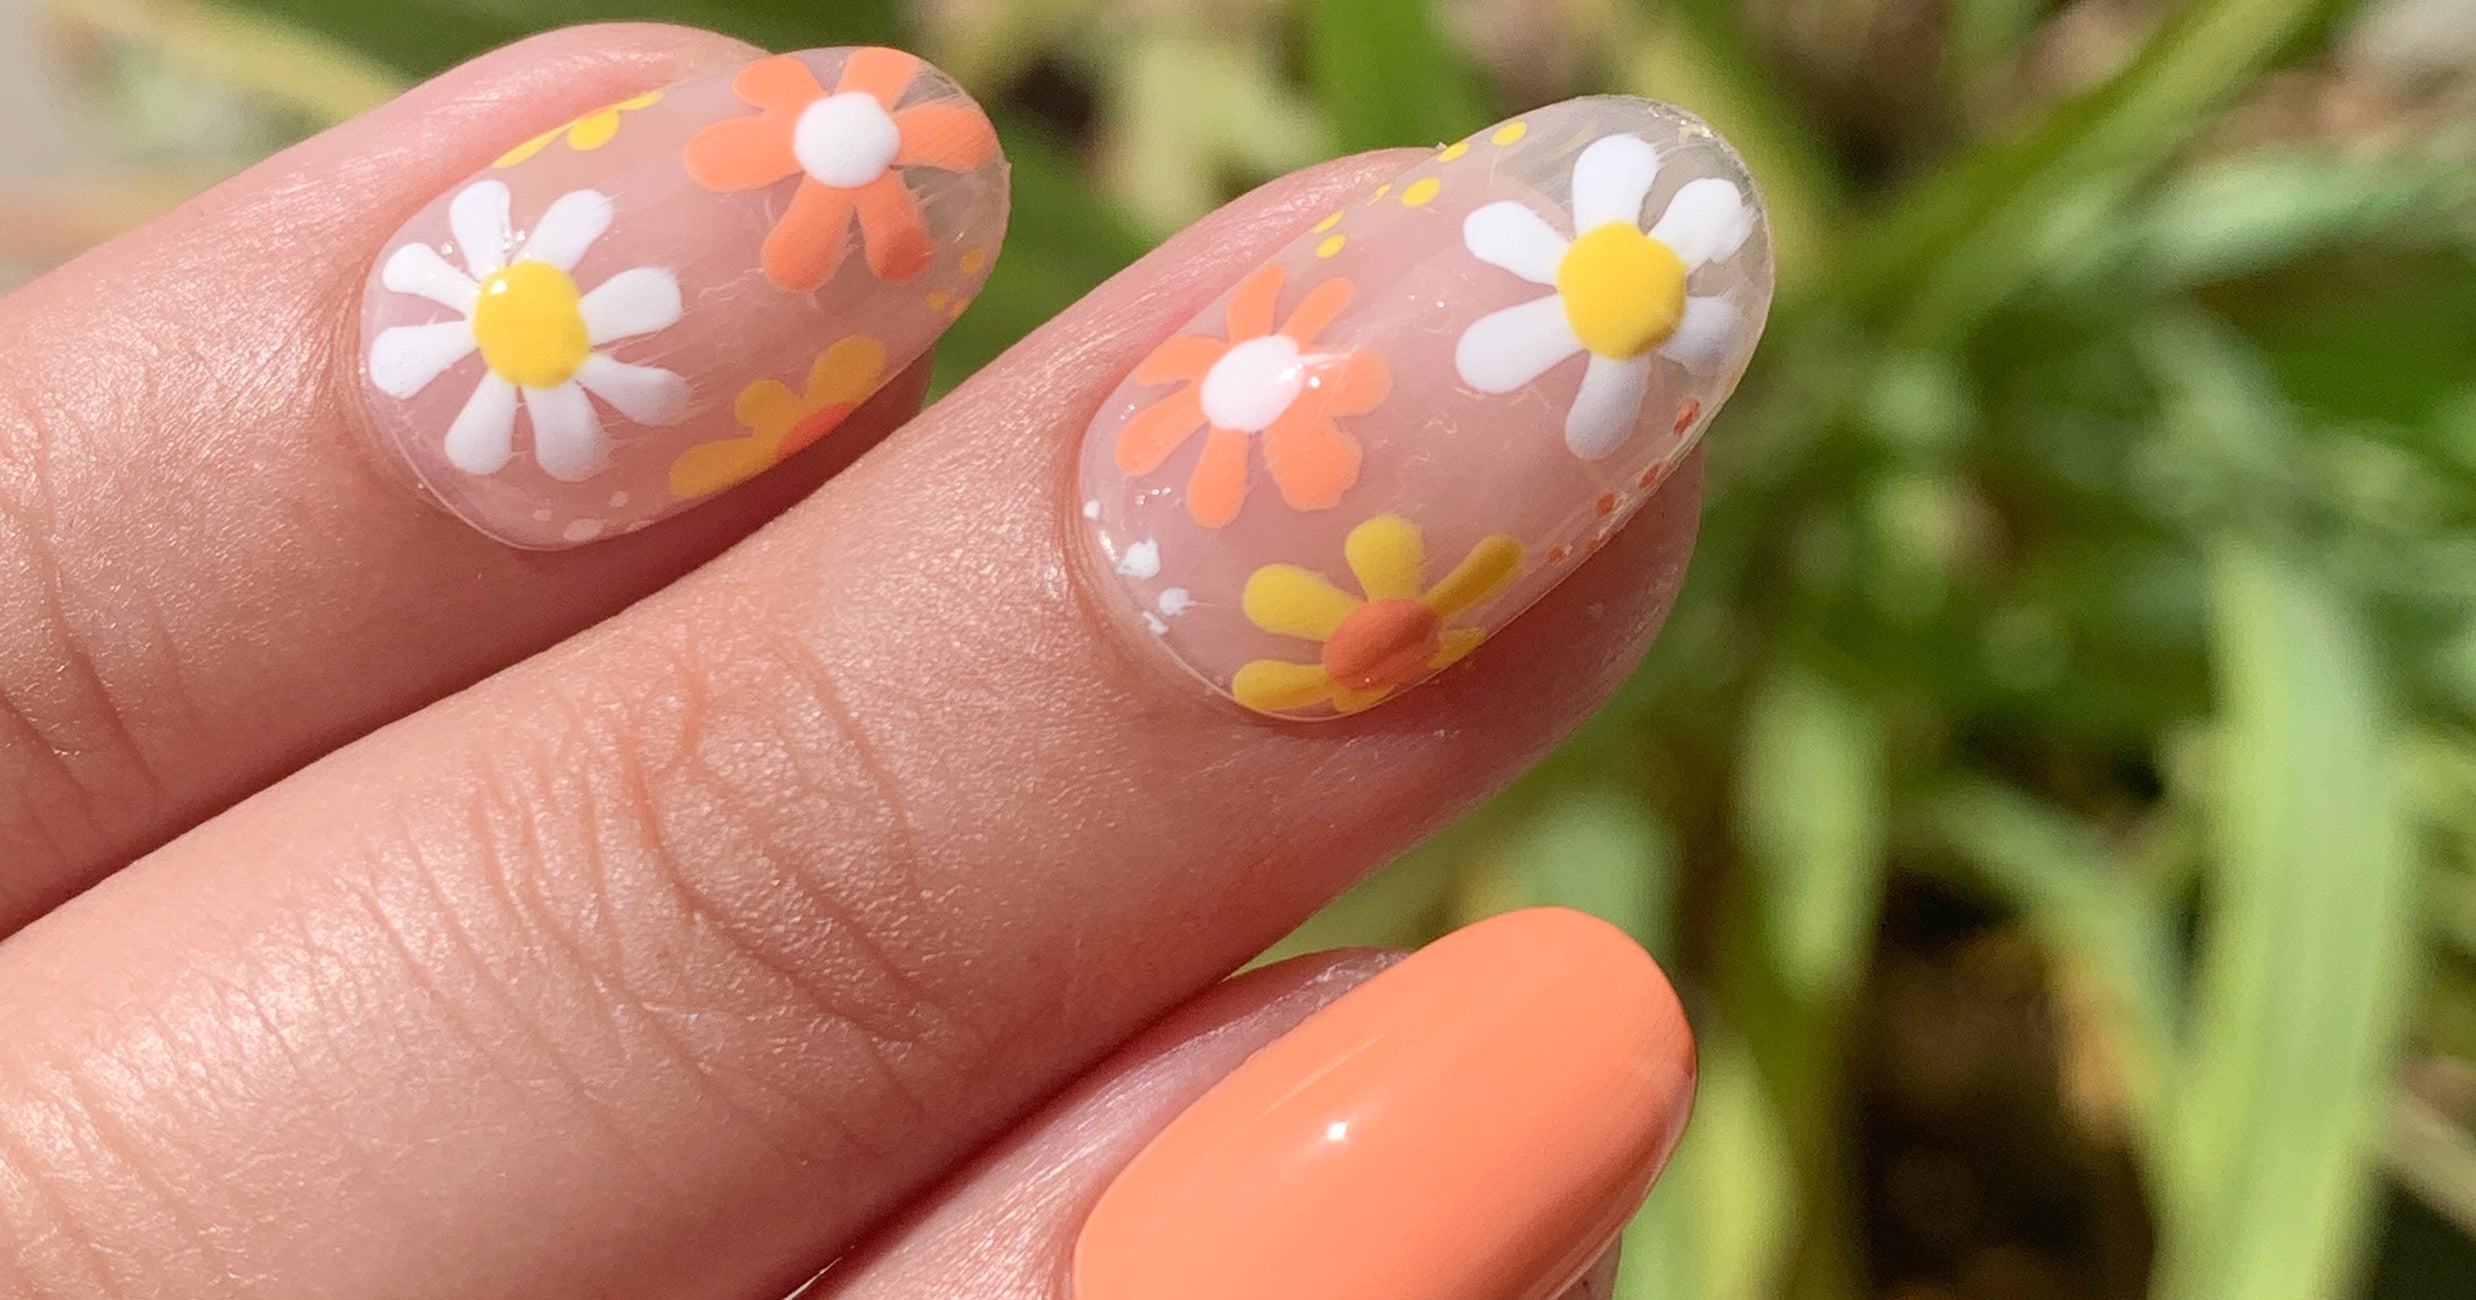 nail art flower designs beginners